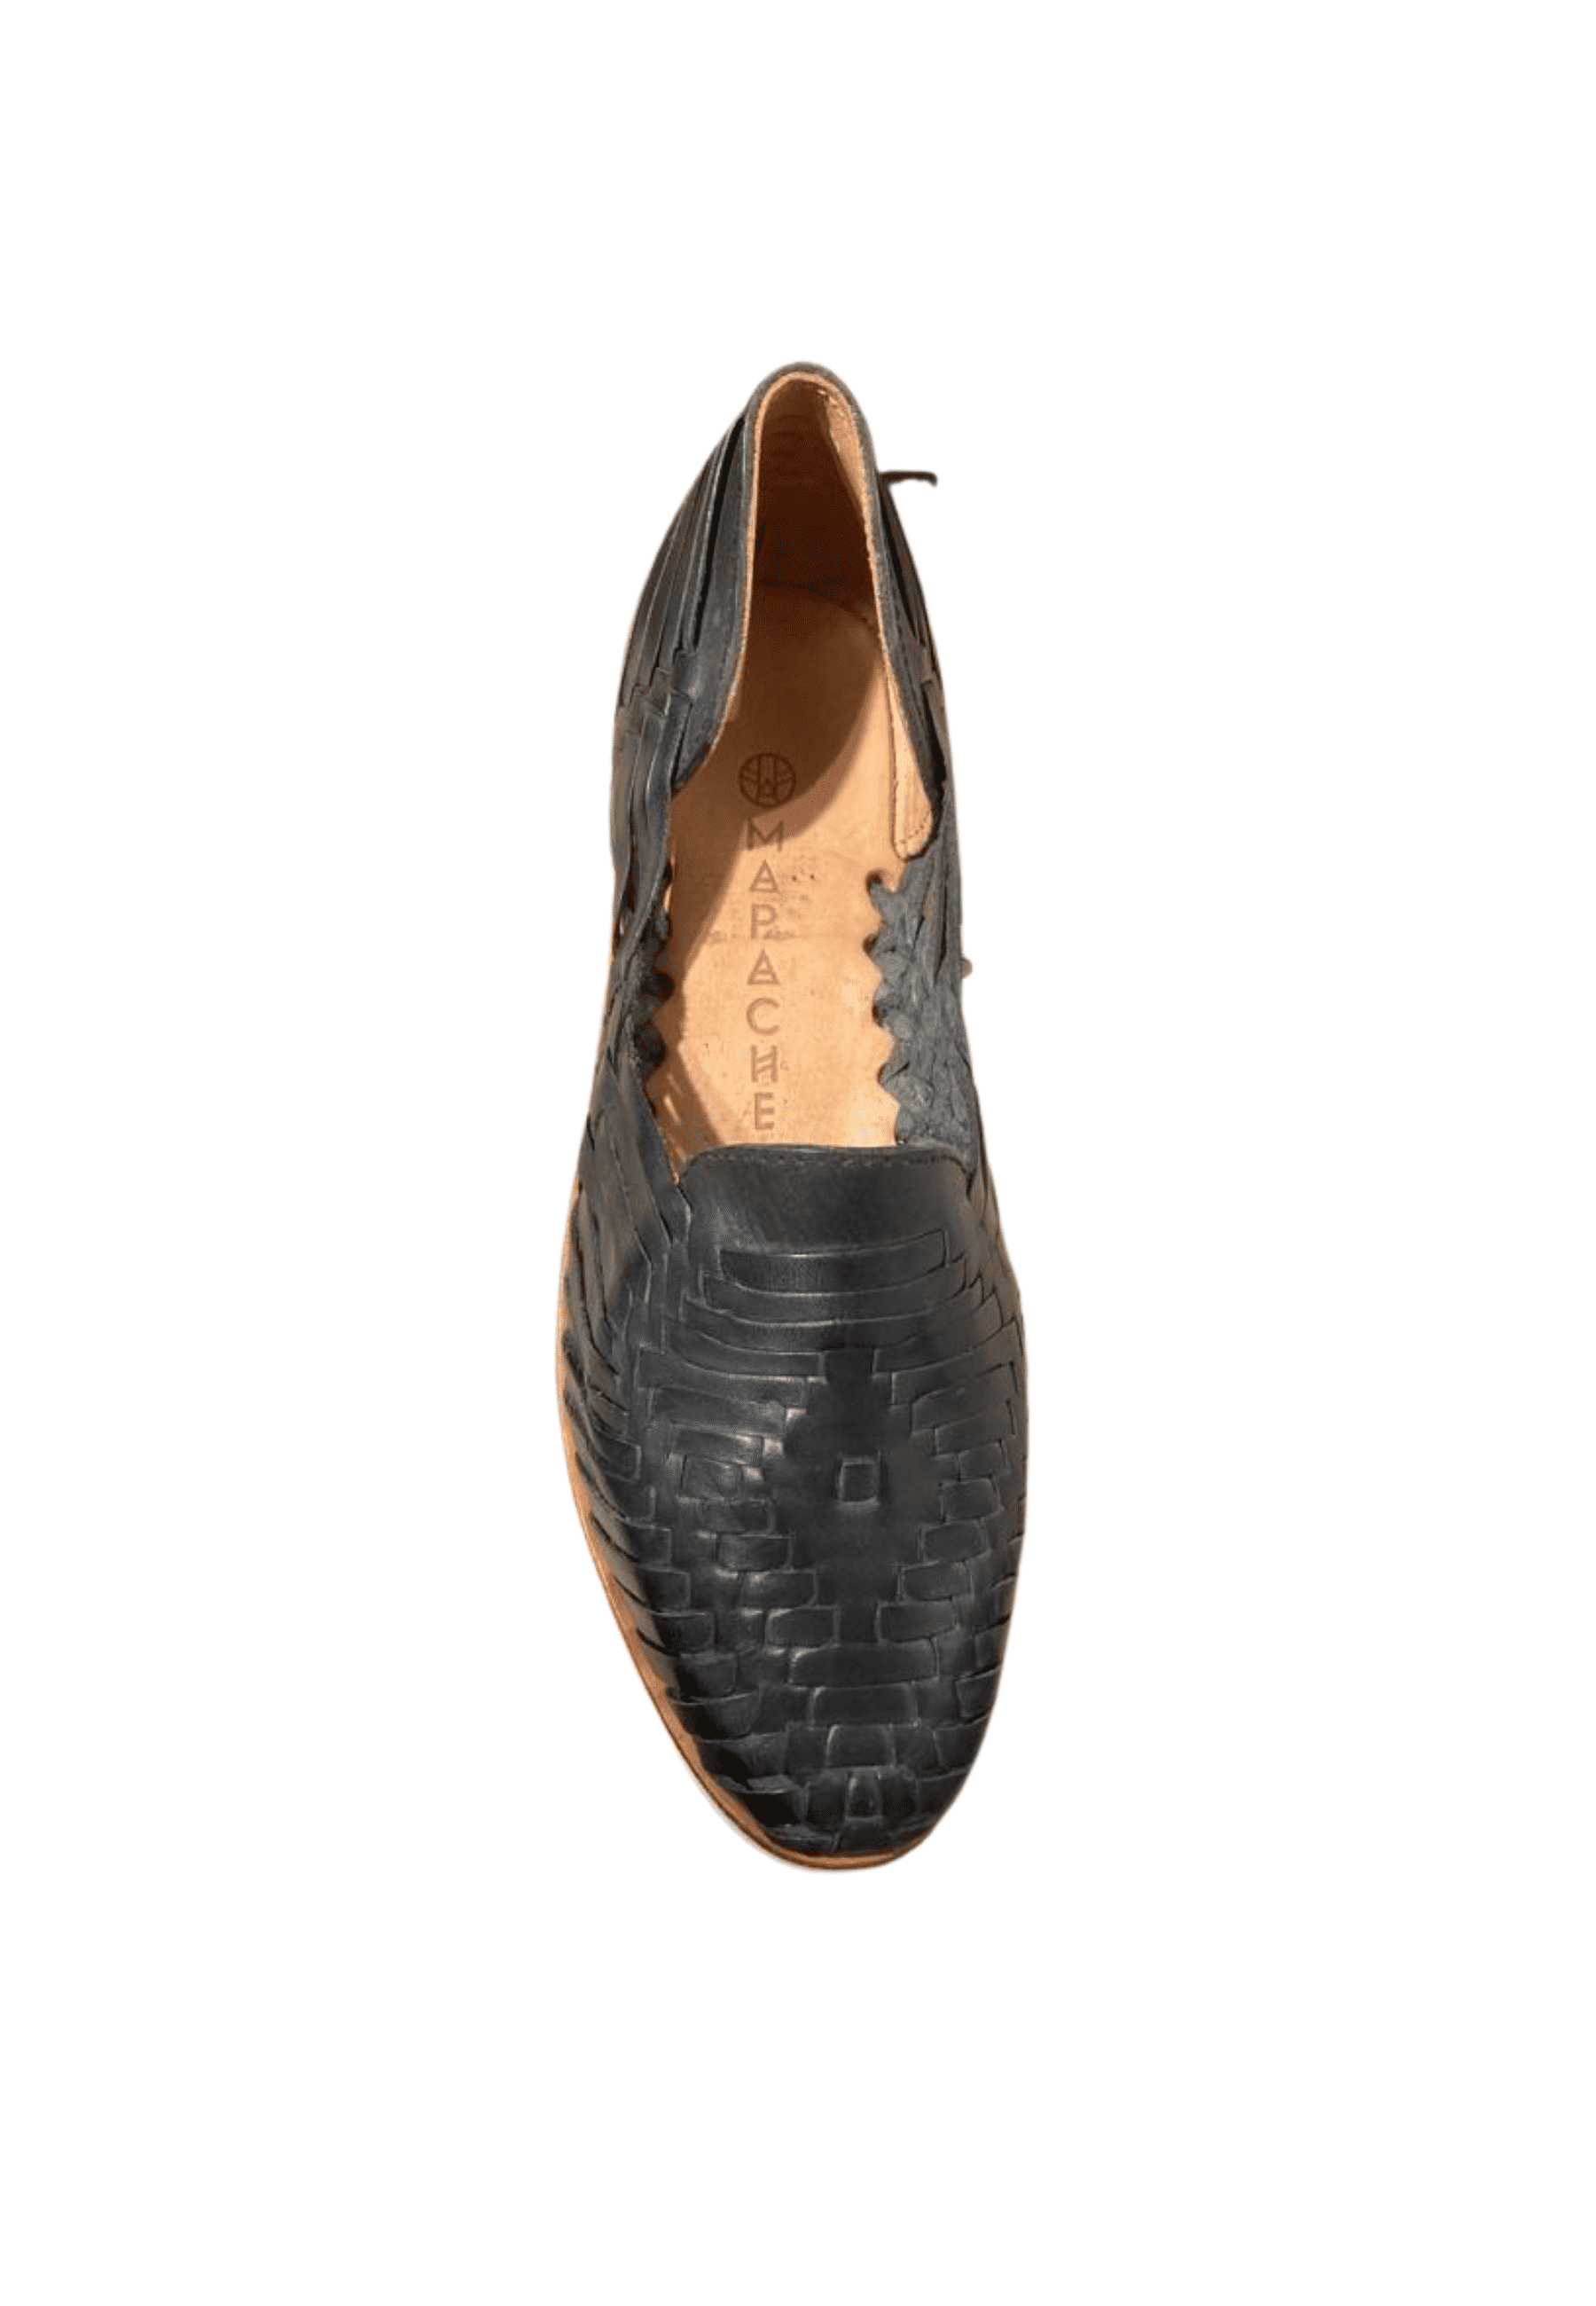 Loreto – Shoe Men's Shoes Cassare